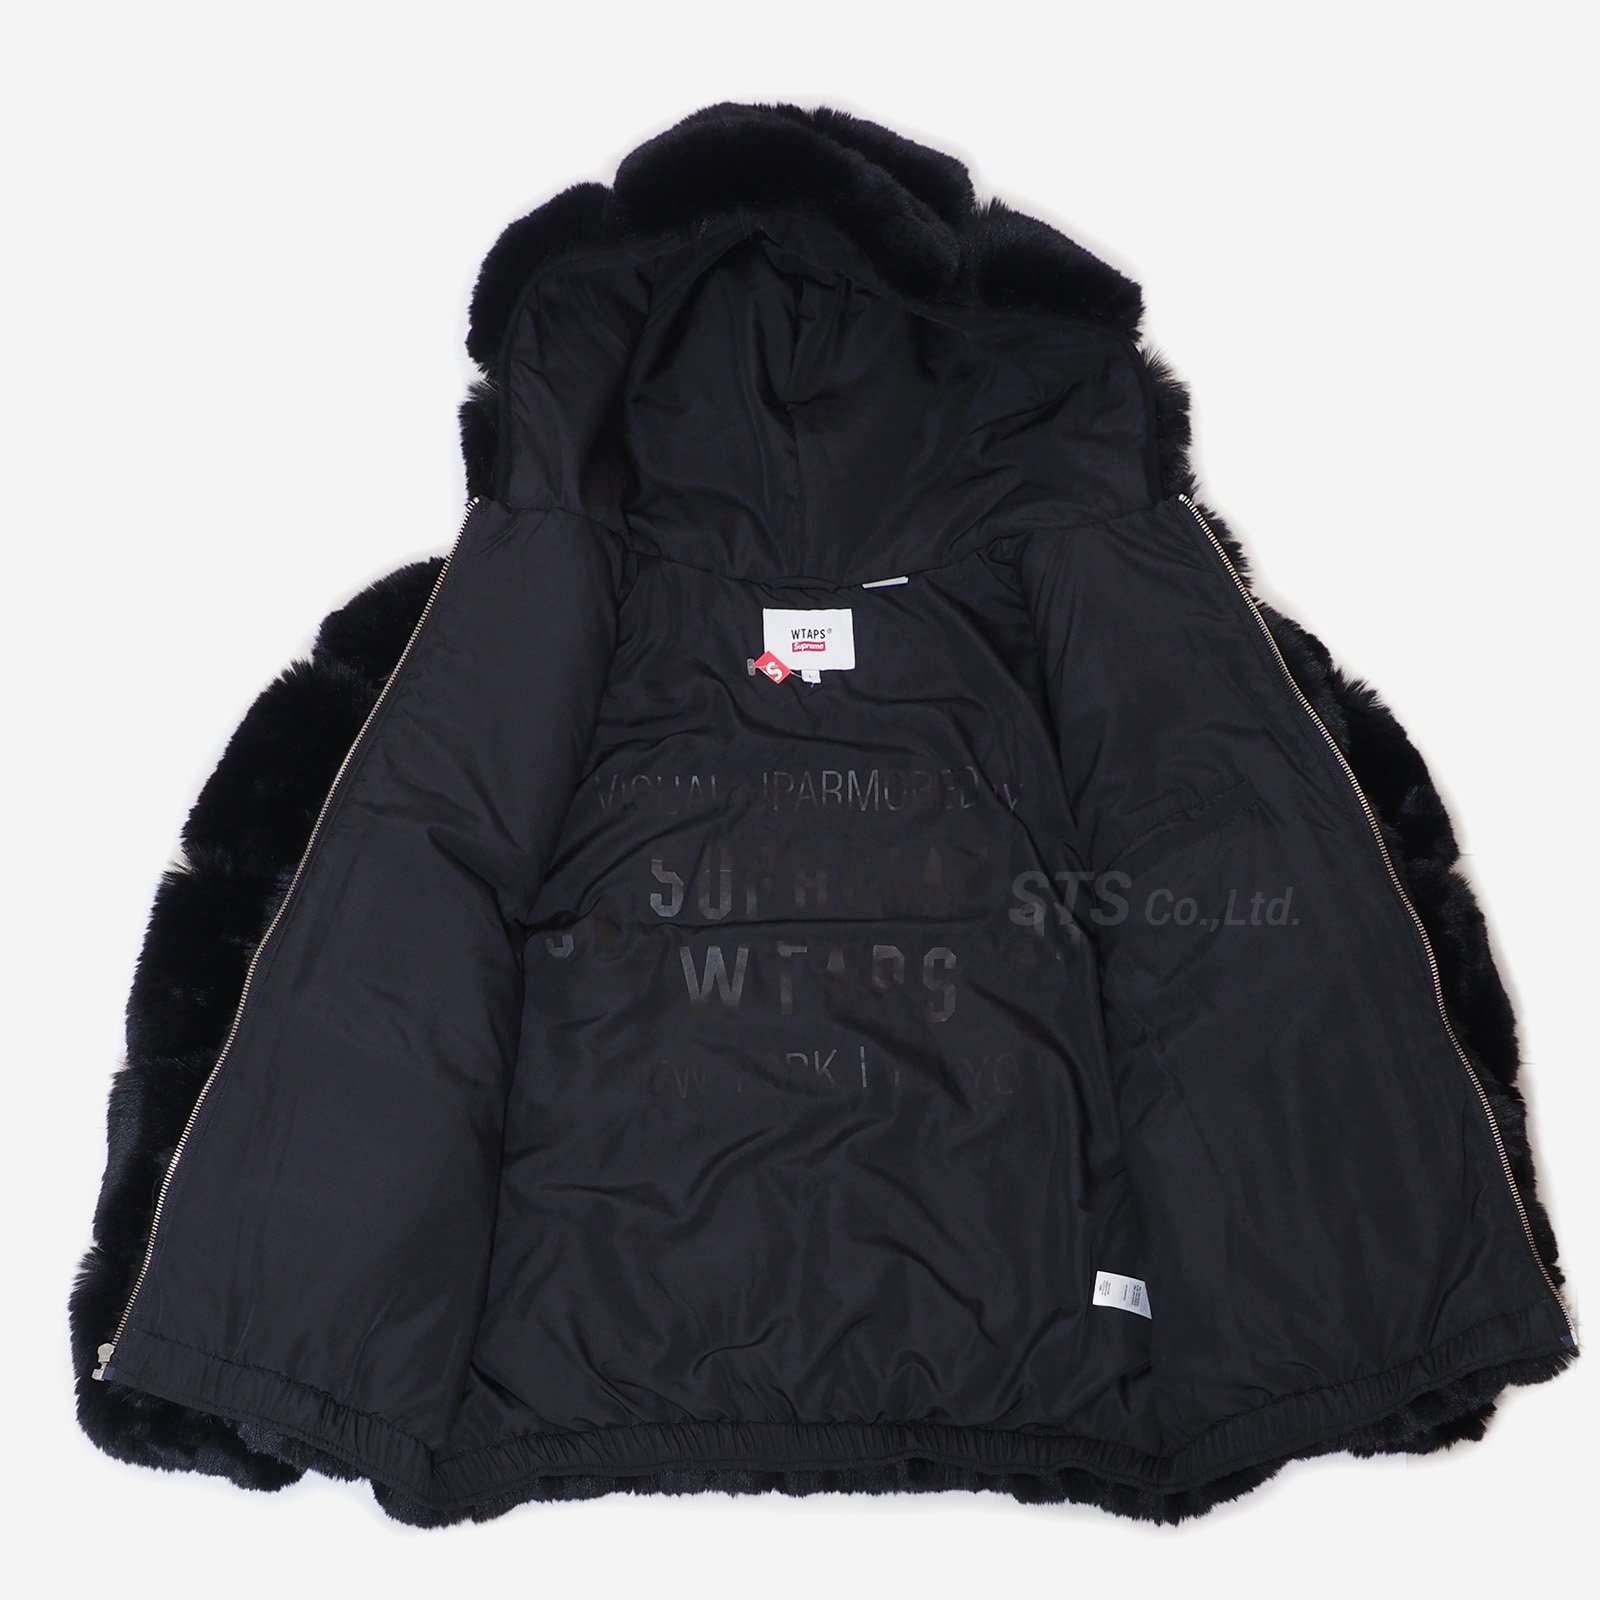 Supreme/WTAPS Faux Fur Hooded Jacket - ParkSIDER